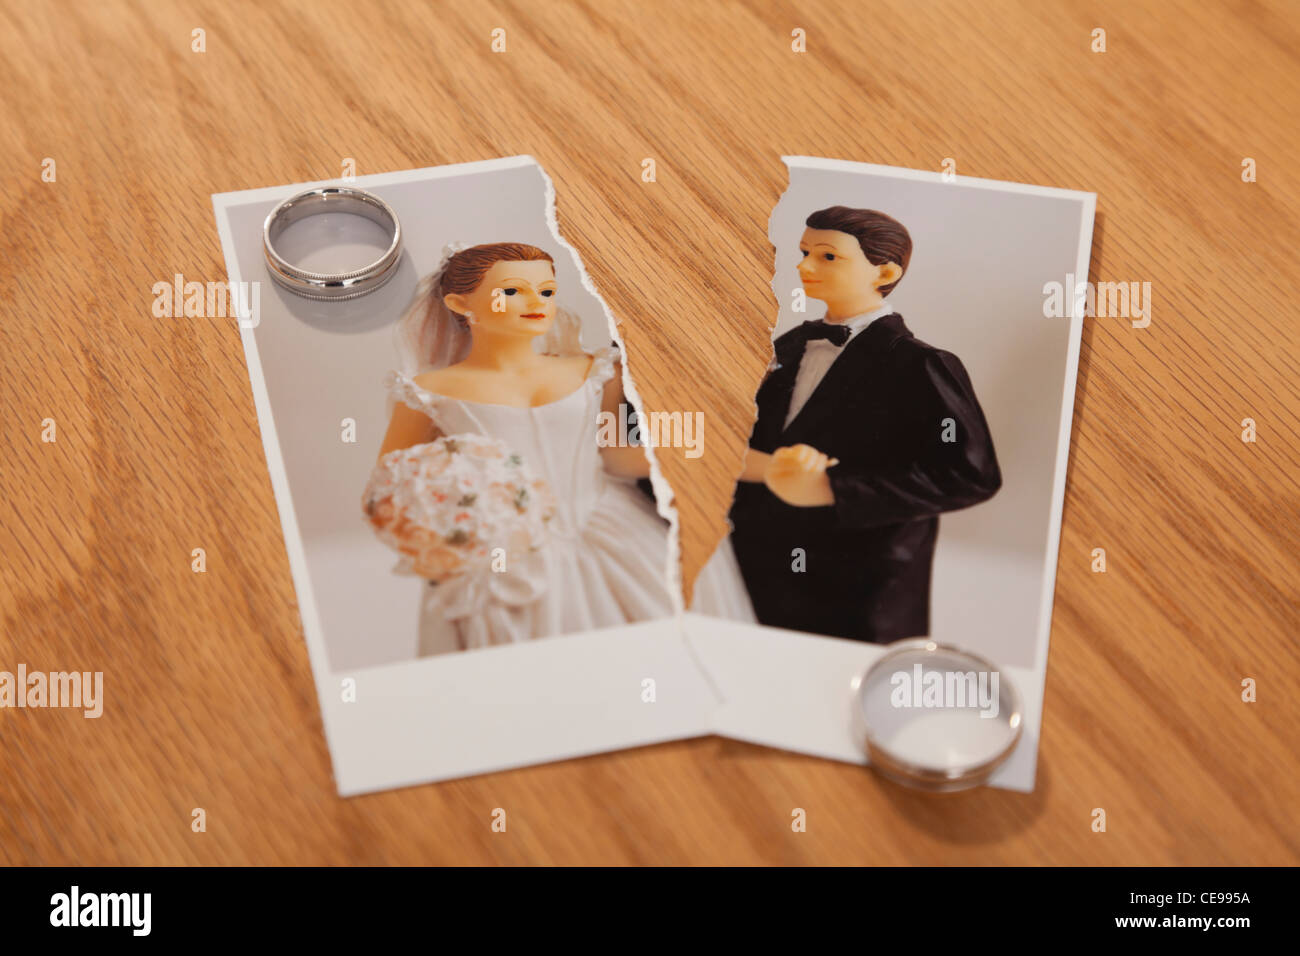 Studio shot of photo de jeunes mariés figurines coupé en deux et les anneaux de mariage Banque D'Images